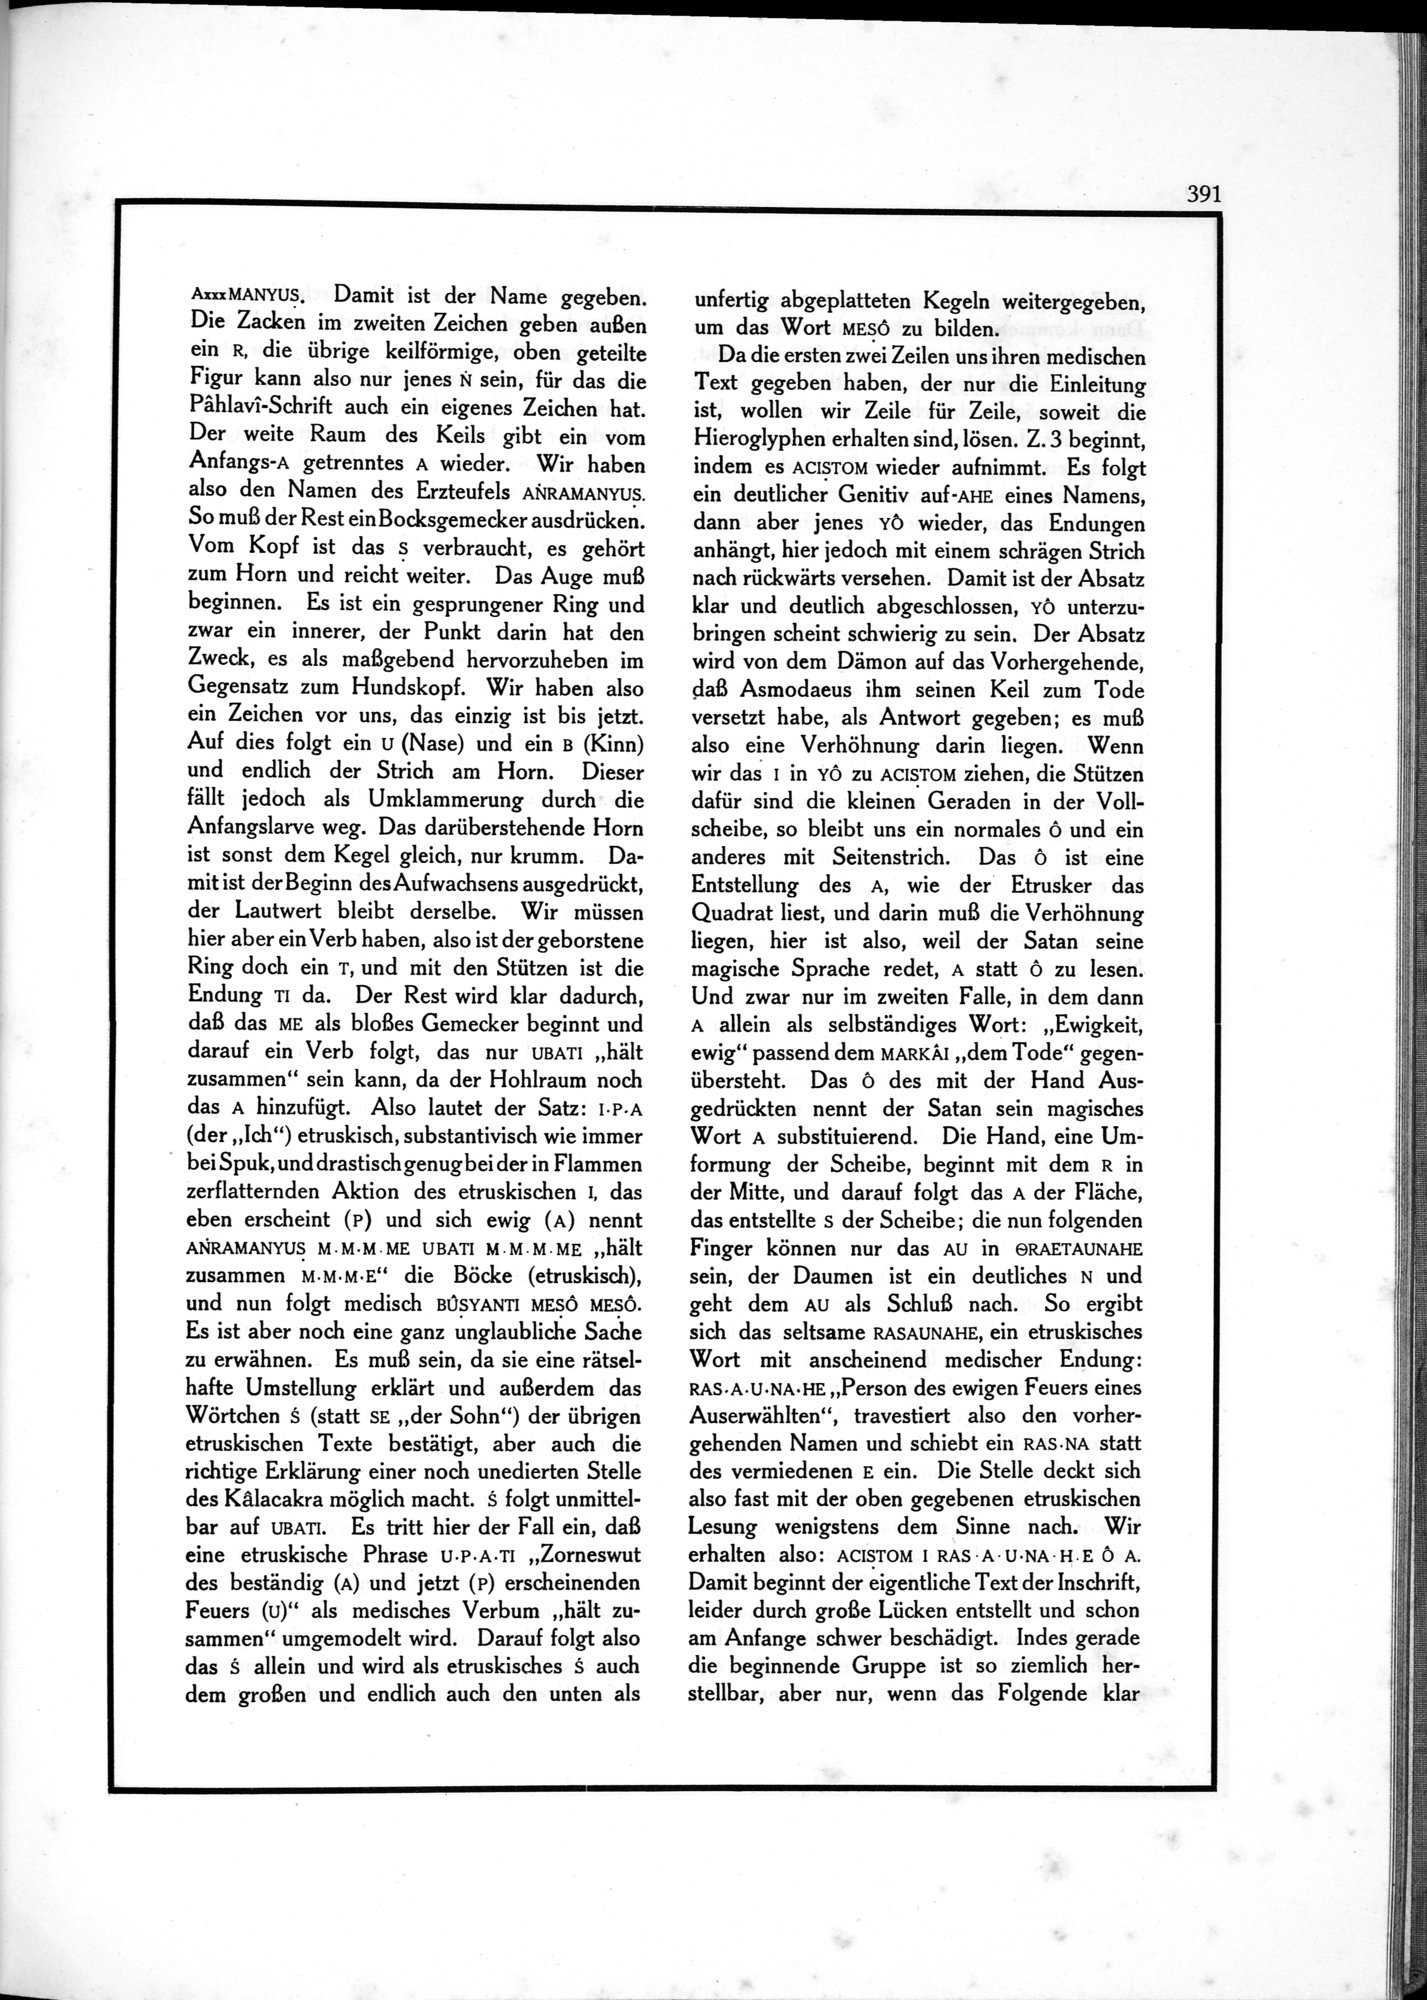 Die Teufel des Avesta und Ihre Beziehungen zur Ikonographie des Buddhismus Zentral-Asiens : vol.1 / Page 395 (Grayscale High Resolution Image)